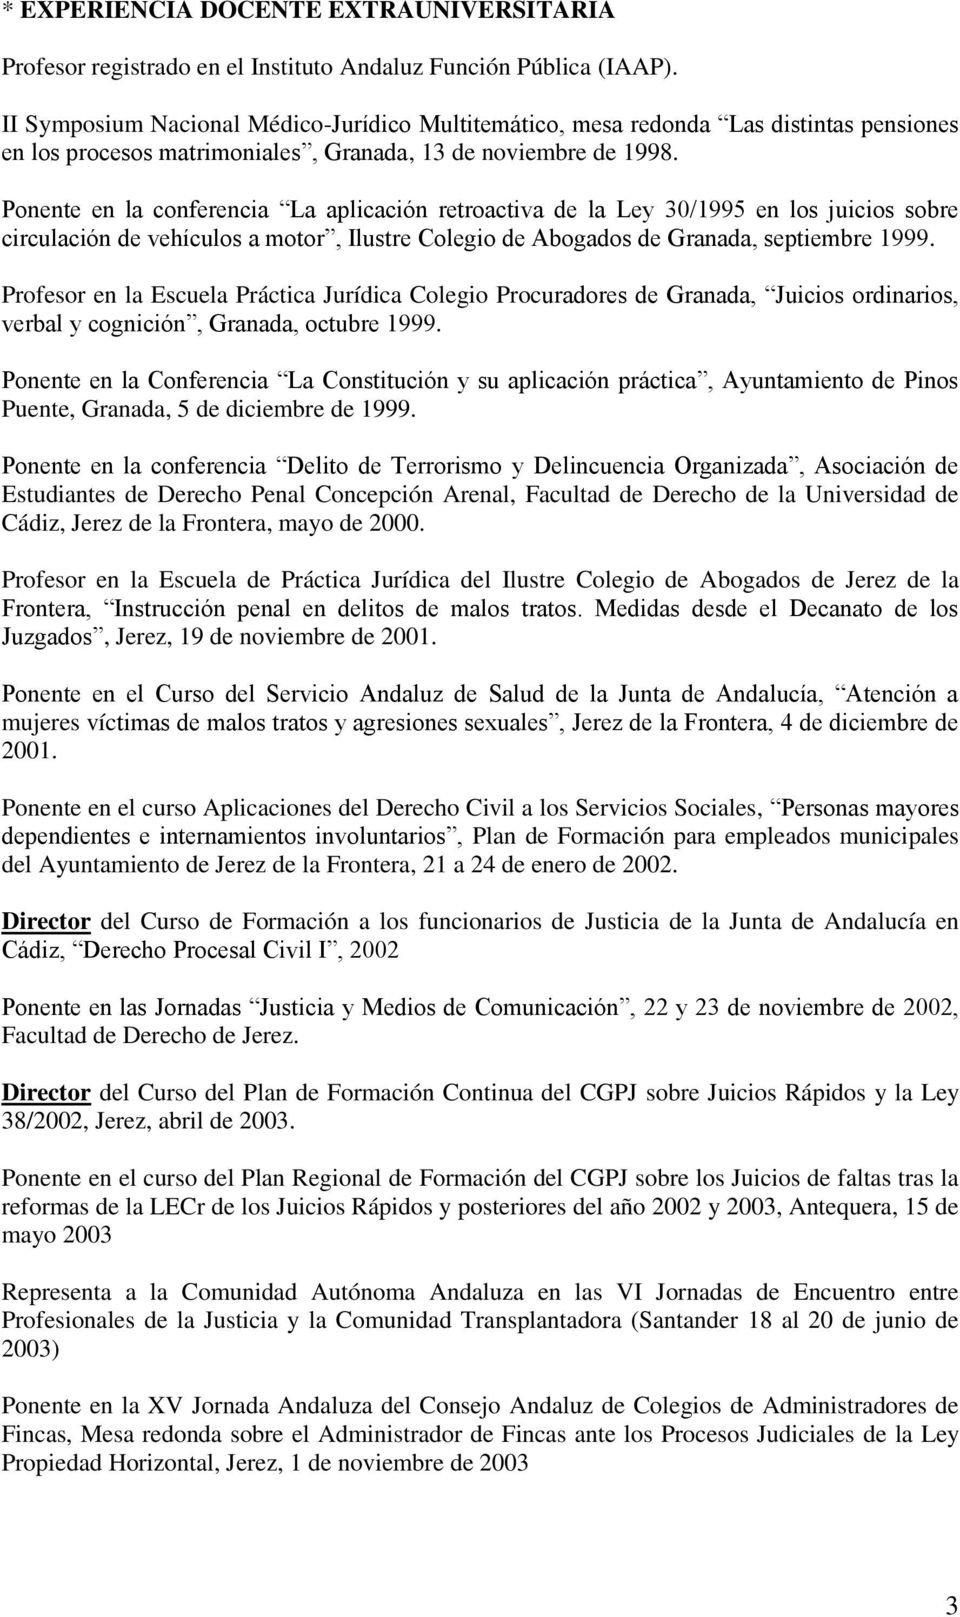 Ponente en la conferencia La aplicación retroactiva de la Ley 30/1995 en los juicios sobre circulación de vehículos a motor, Ilustre Colegio de Abogados de Granada, septiembre 1999.